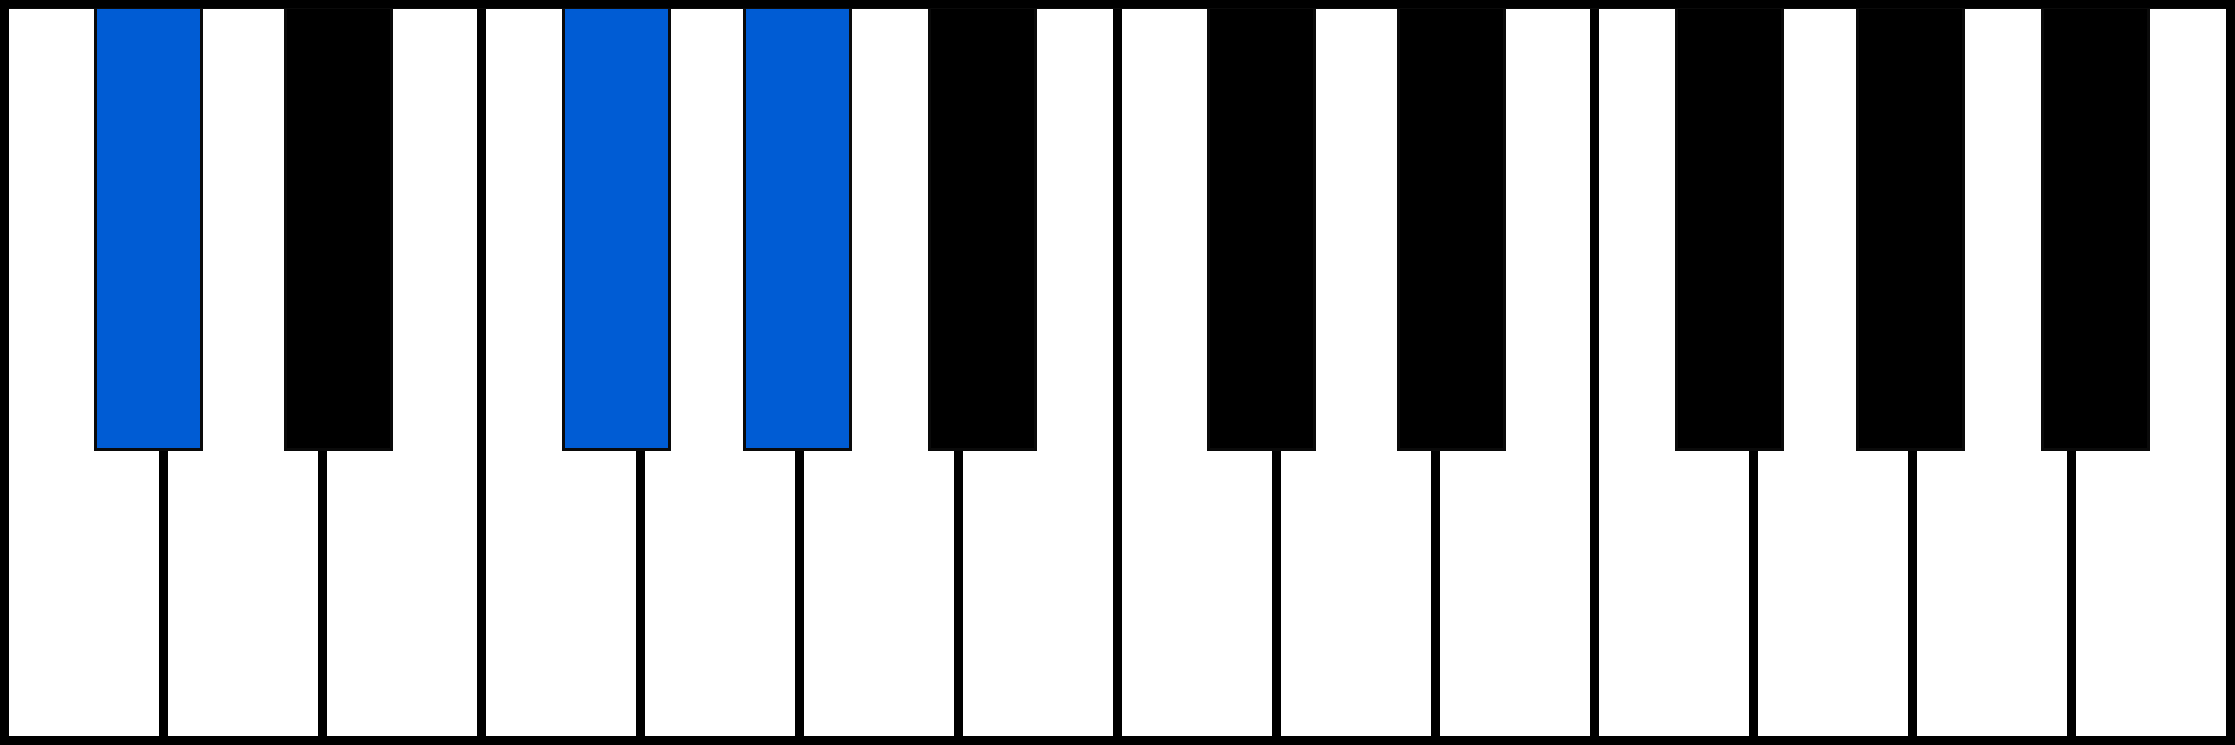 C#sus4 piano chord fingering